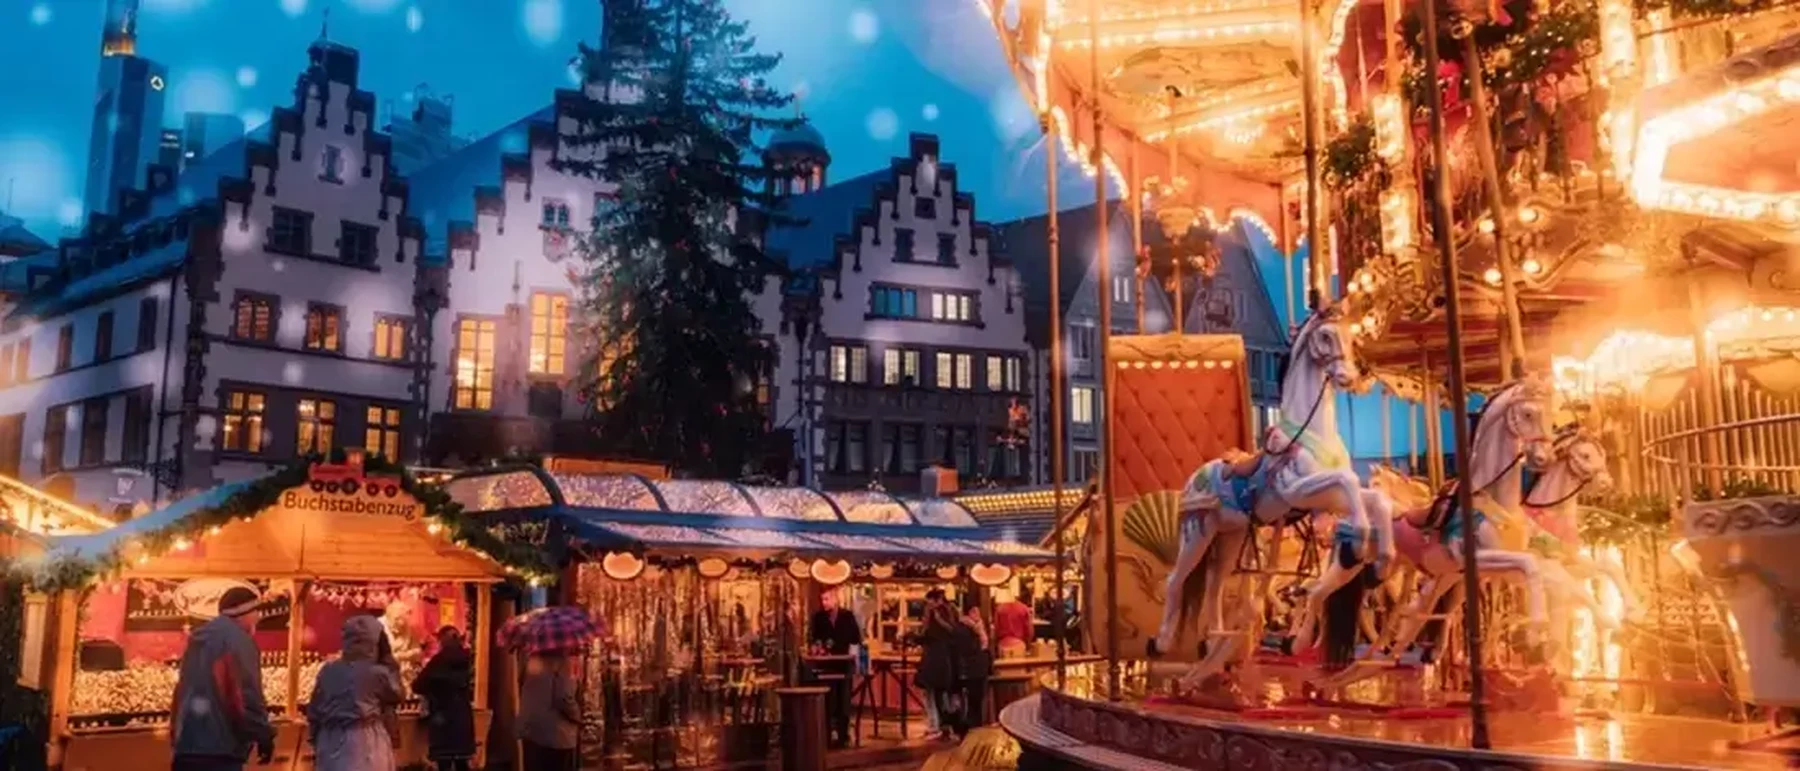 Goedkoop naar een kerstmarkt in Duitsland doe je met deze tips